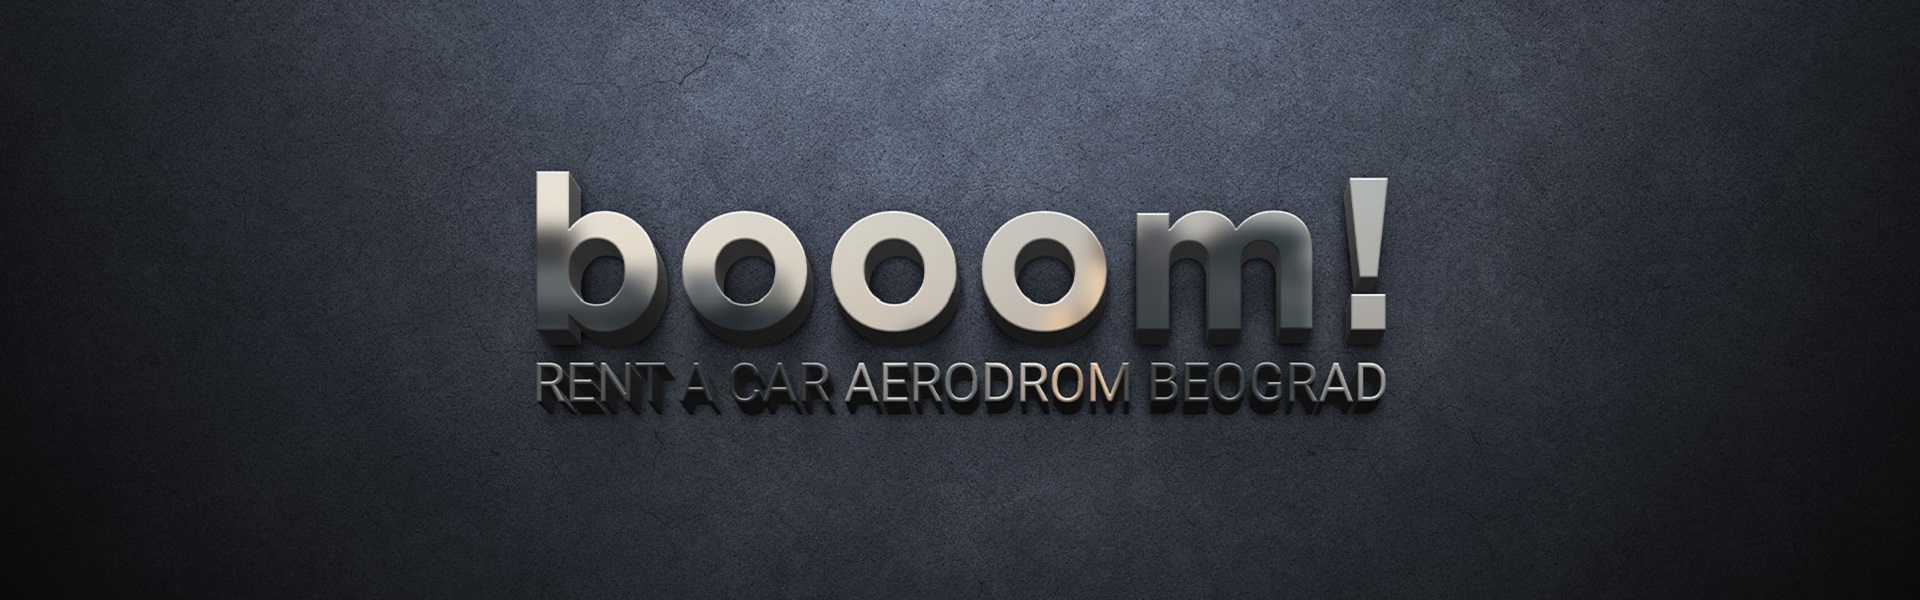 Rent a car Aerodrom Beograd | Rent a car Beograd